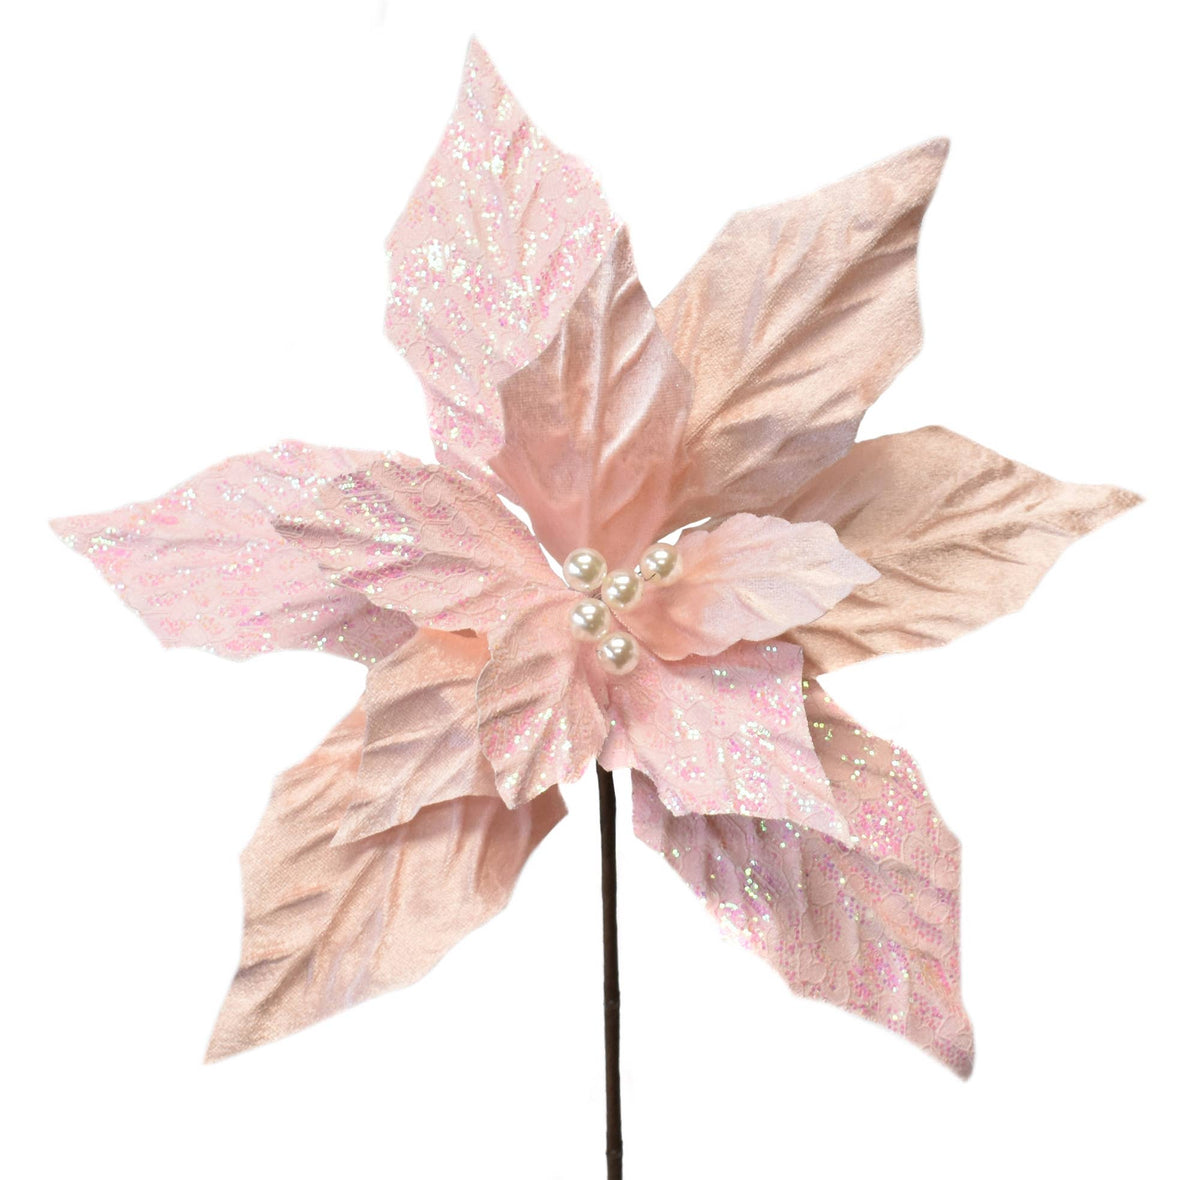 Flower - Velvet/Glitter/Patterned Poinsettia - Light Pink 16"x14"